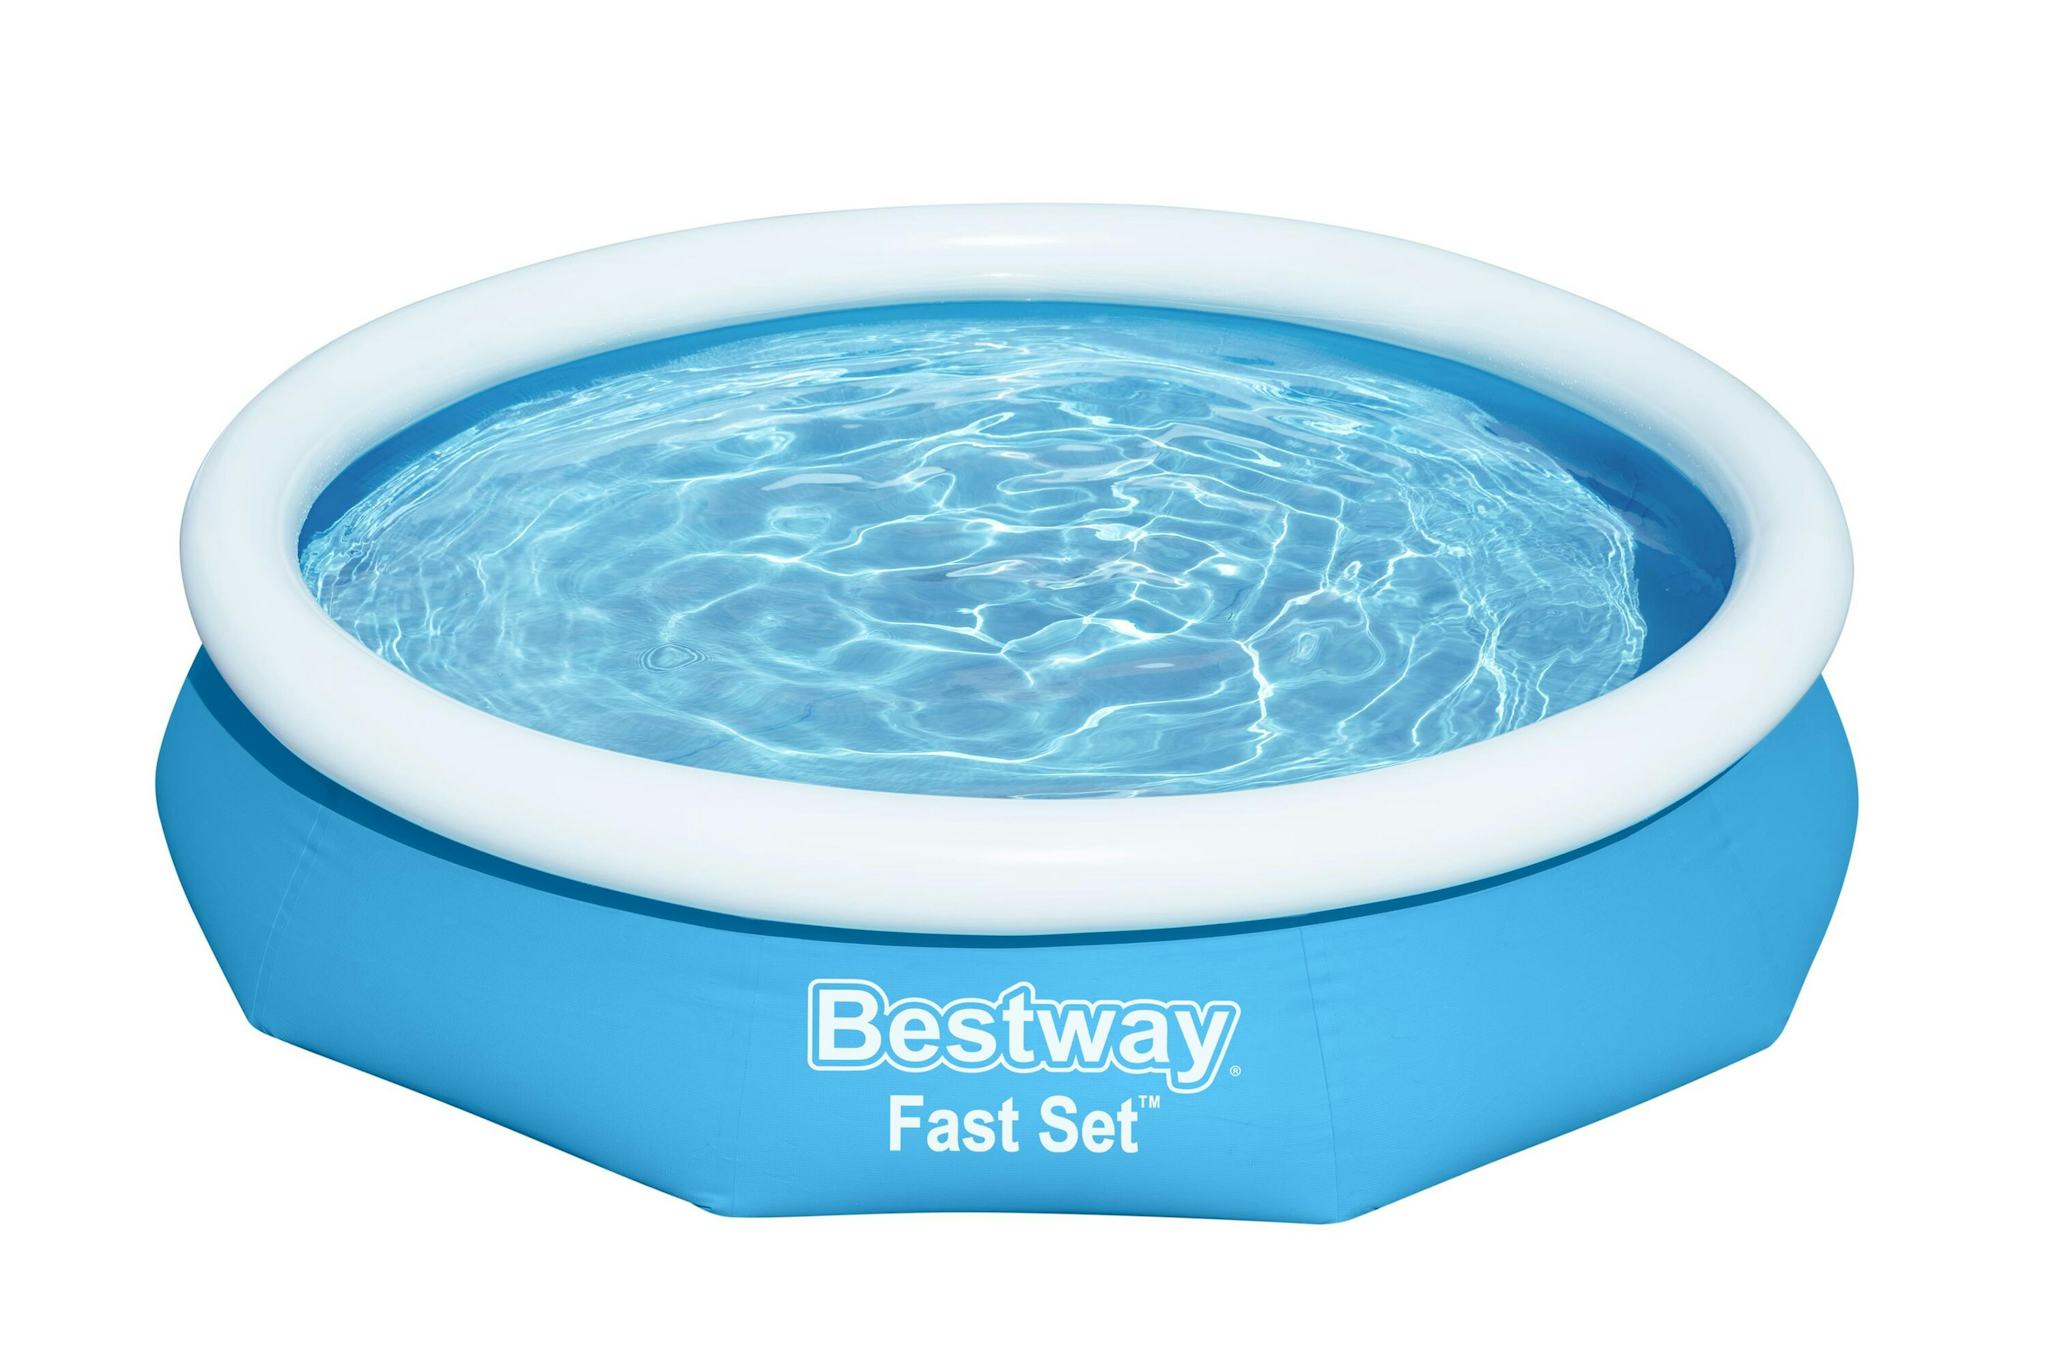 Bovengronds zwembad Fast Set bovengronds rond opblaasbaar zwembad van 305x66 cm blauw Bestway 1